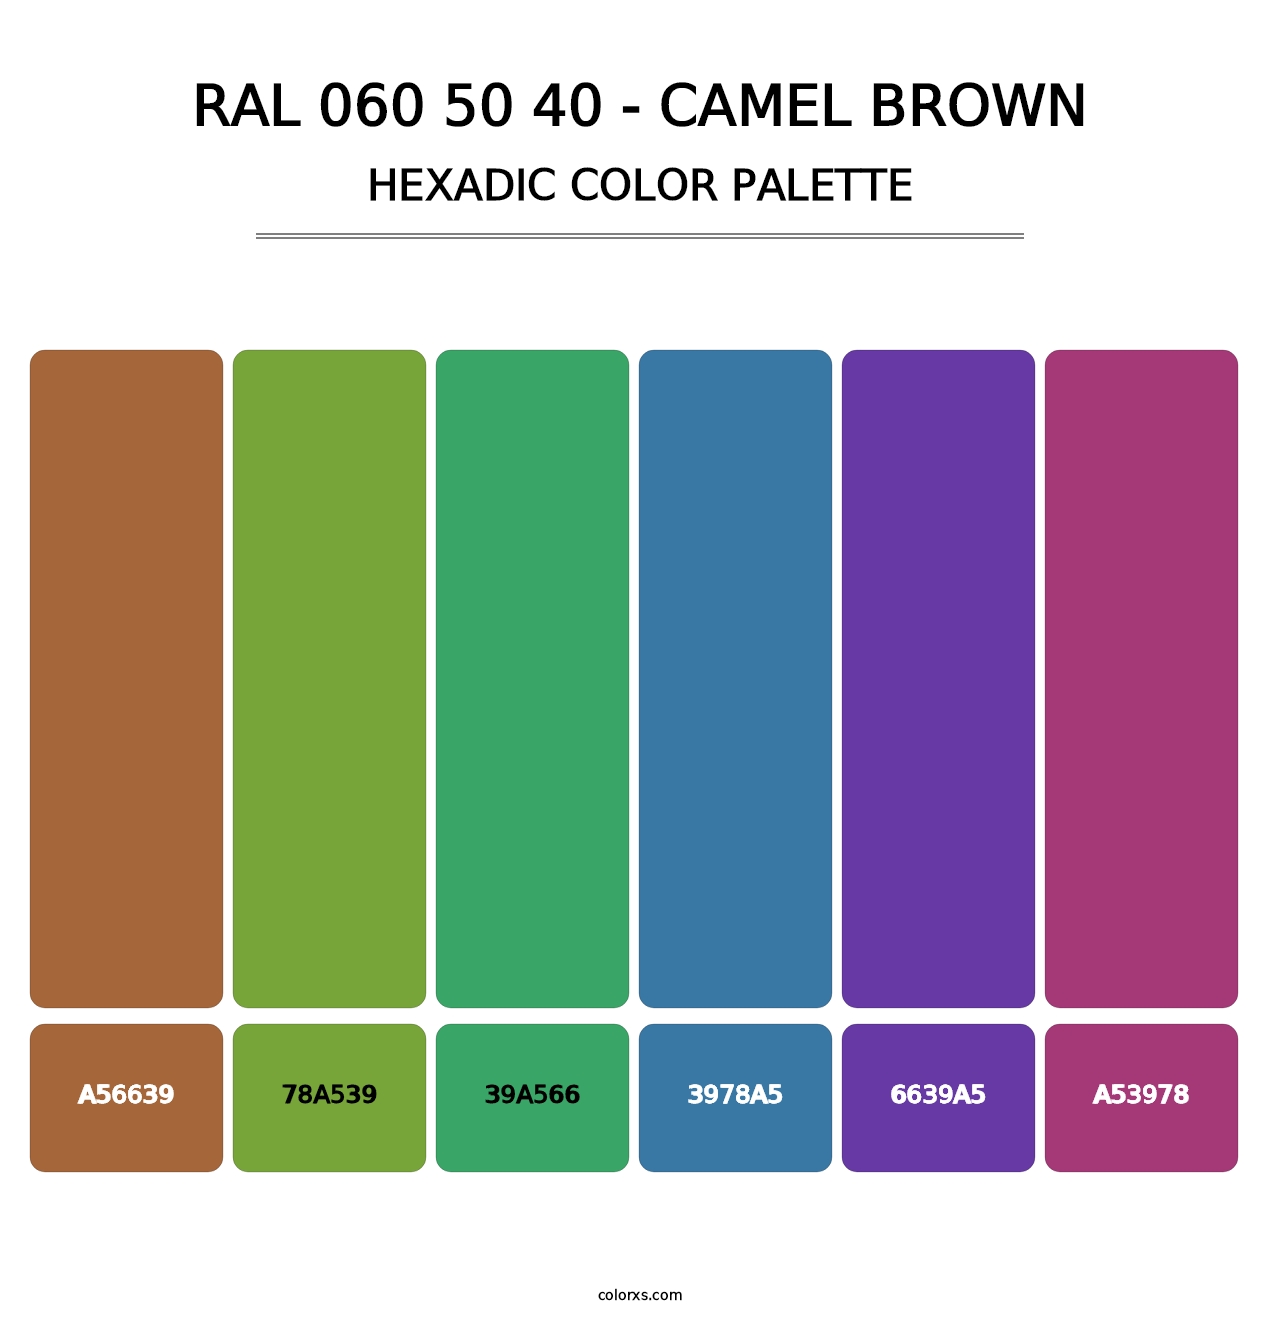 RAL 060 50 40 - Camel Brown - Hexadic Color Palette